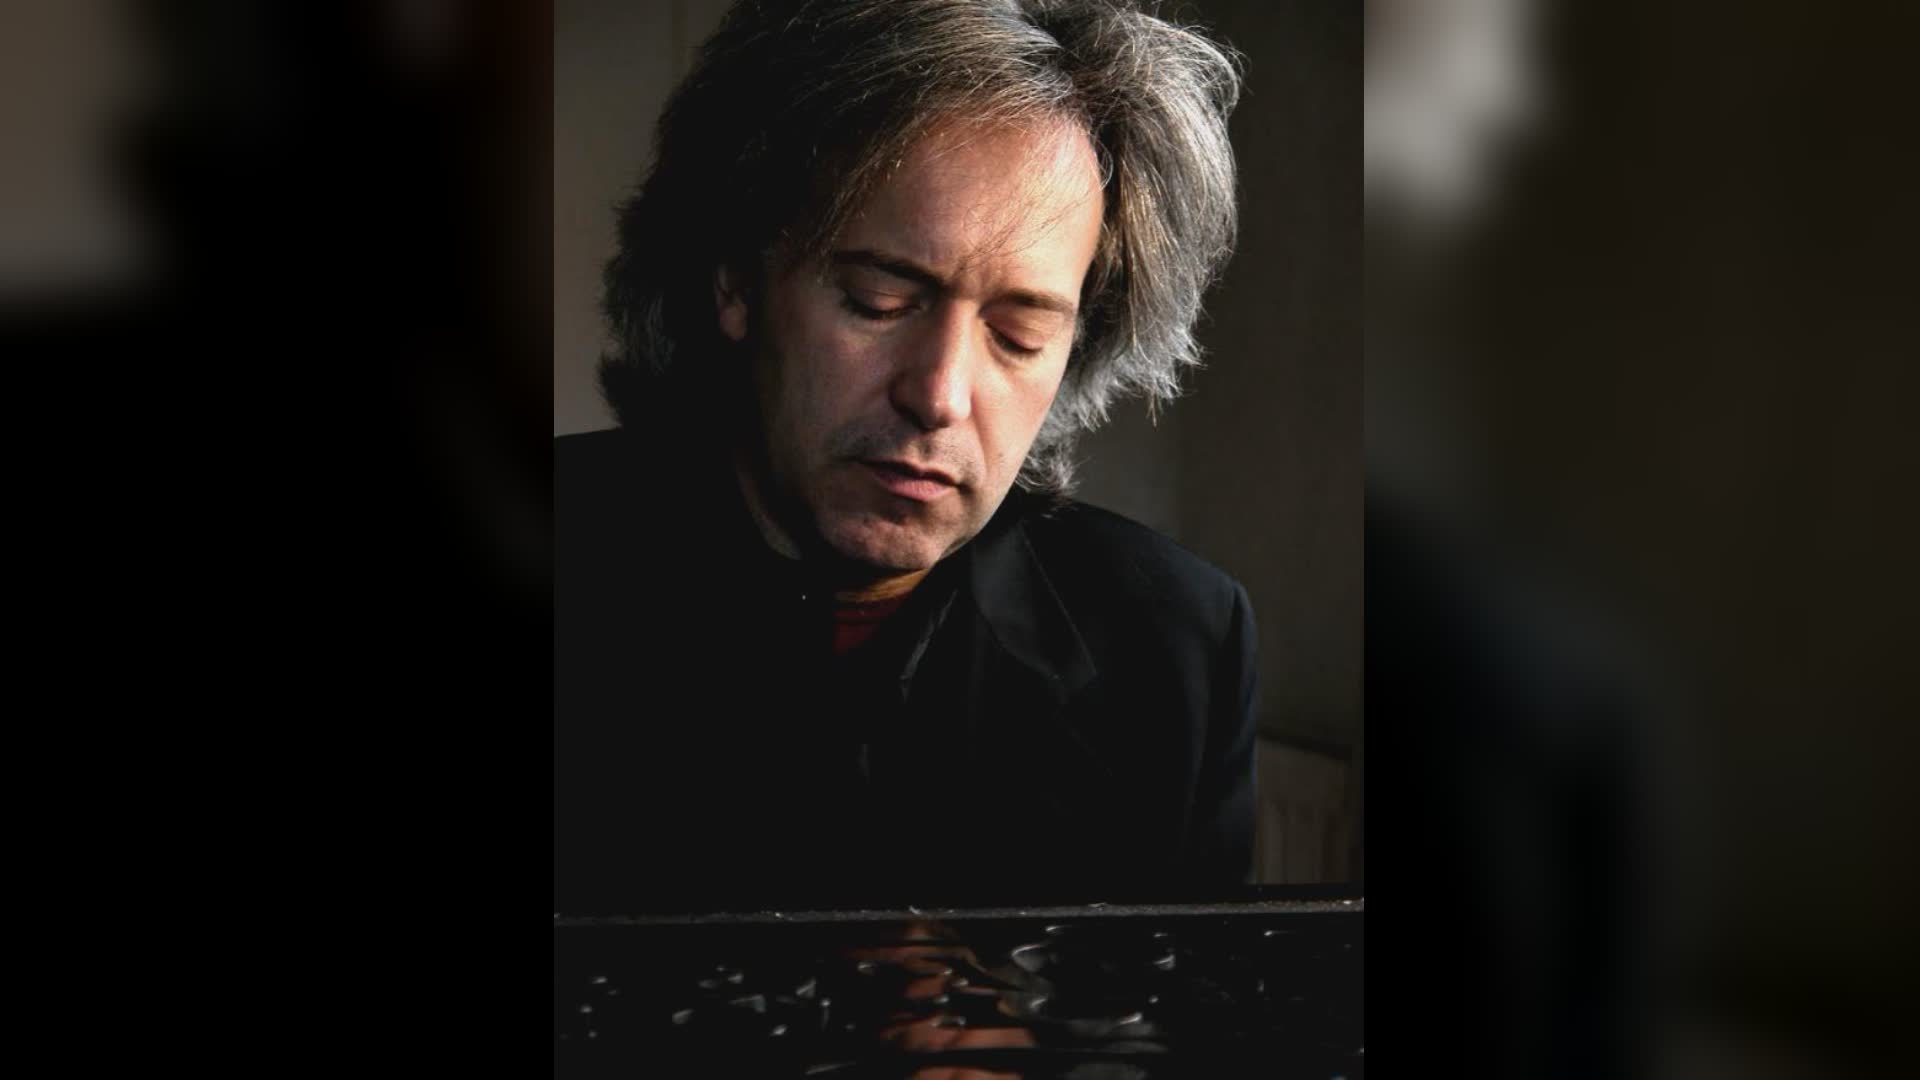 Camogli: Adolfo Barabino, il 27 aprile concerto al Teatro Sociale nel segno di Liszt e Chopin